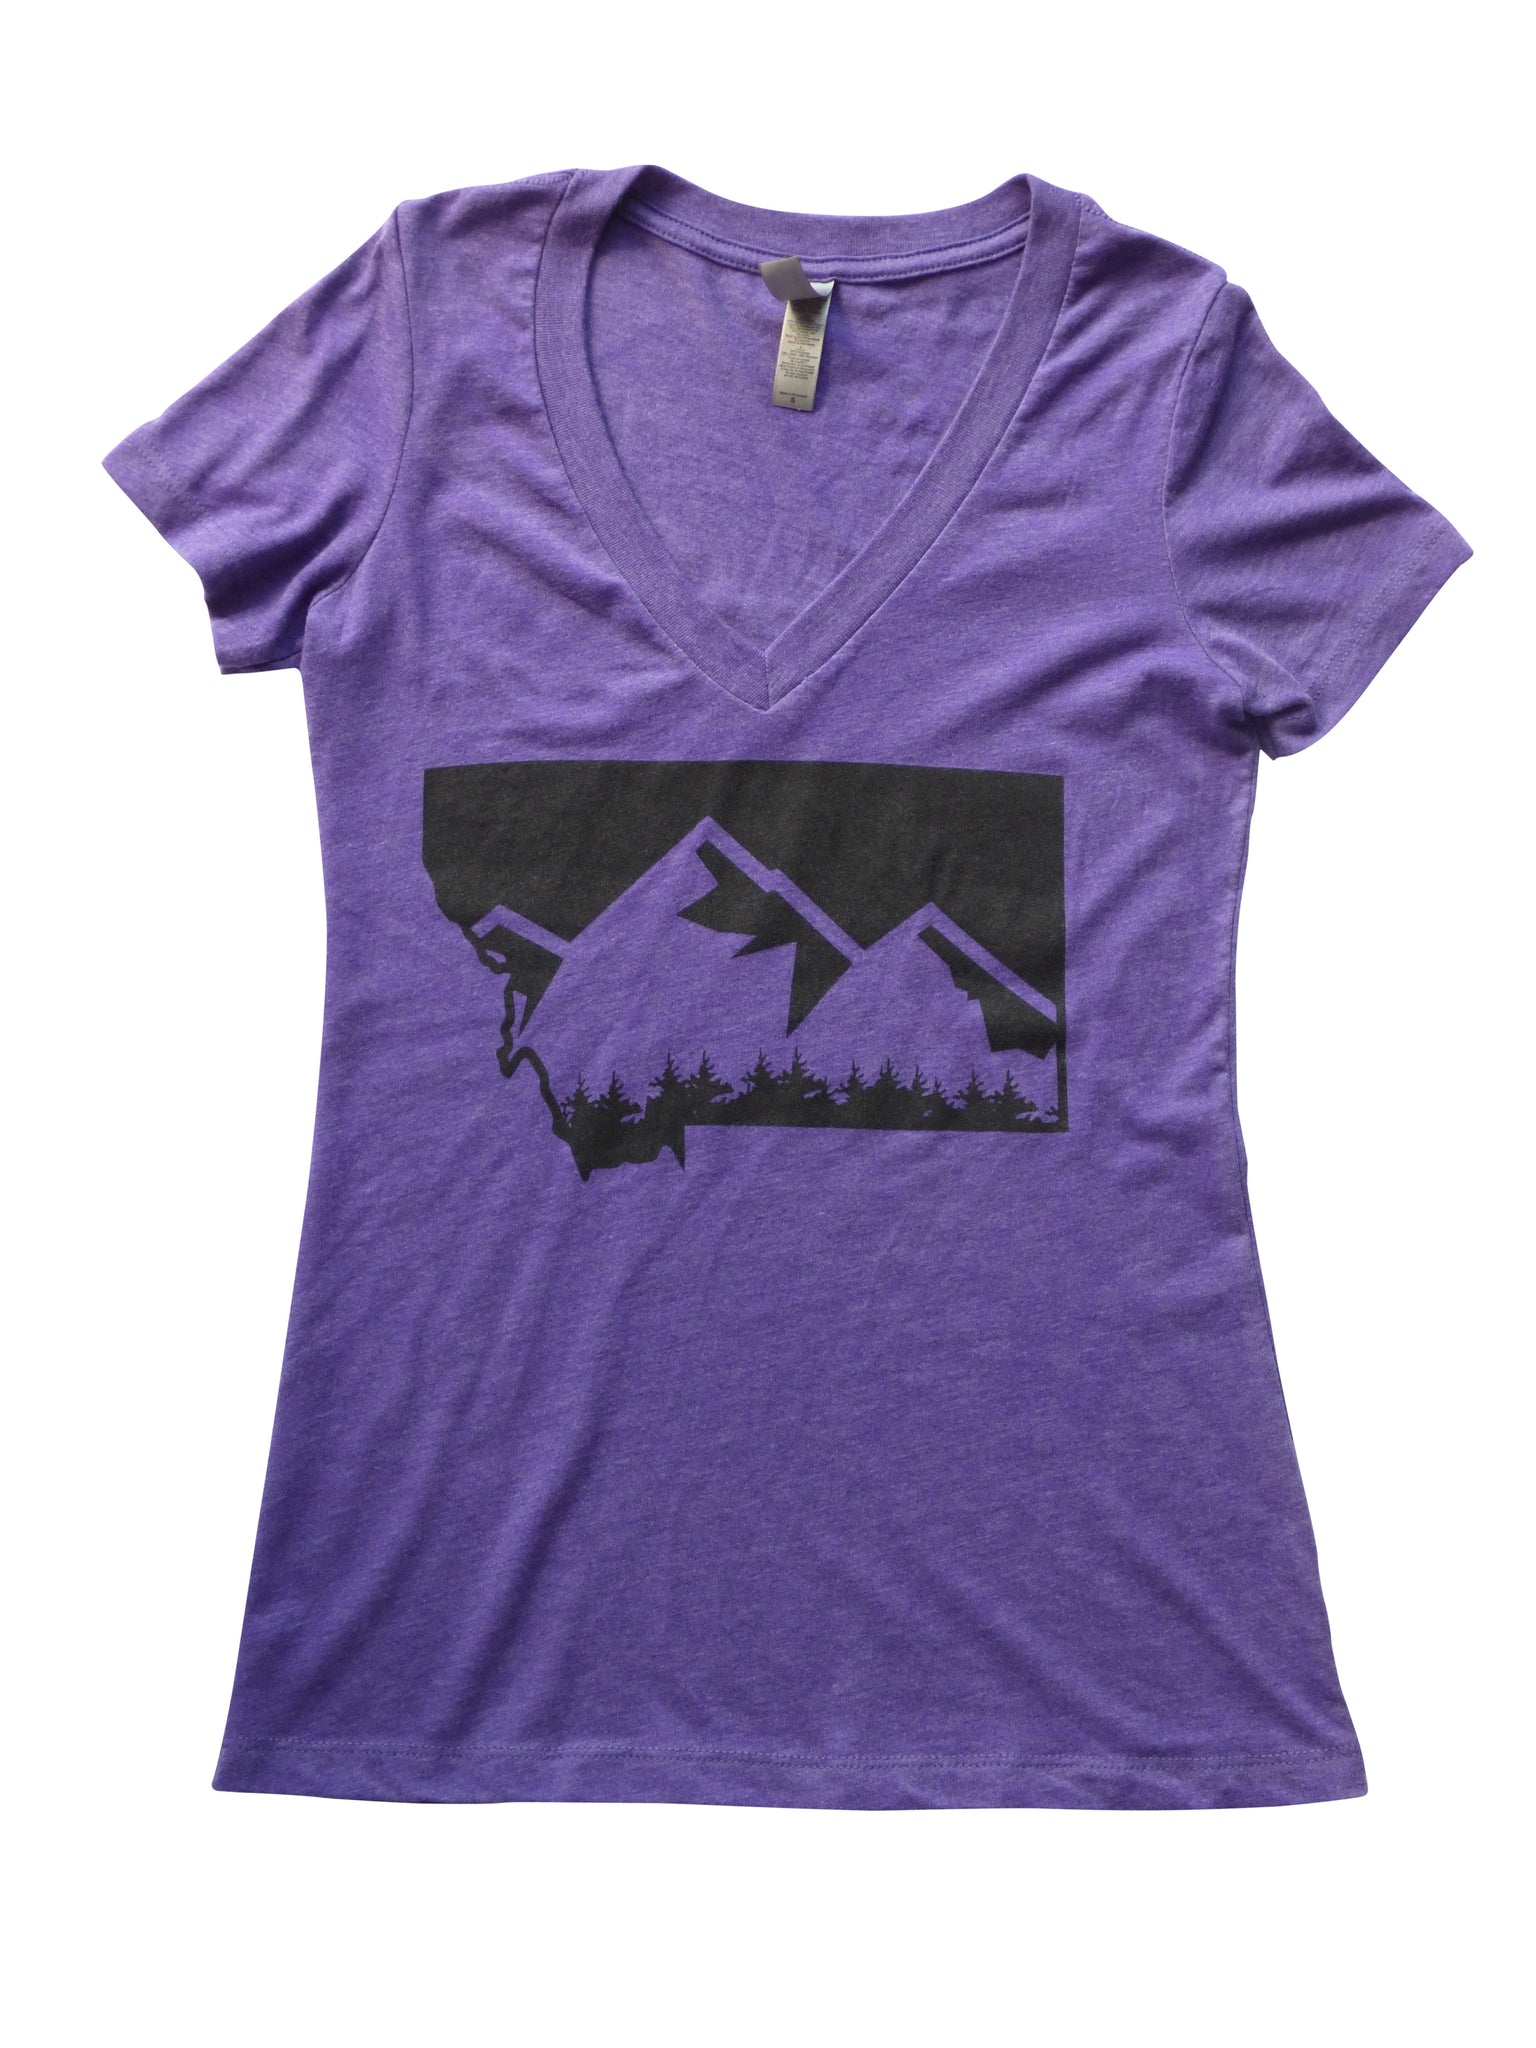 Women's-Junior Cut Mountain Shirt Purple